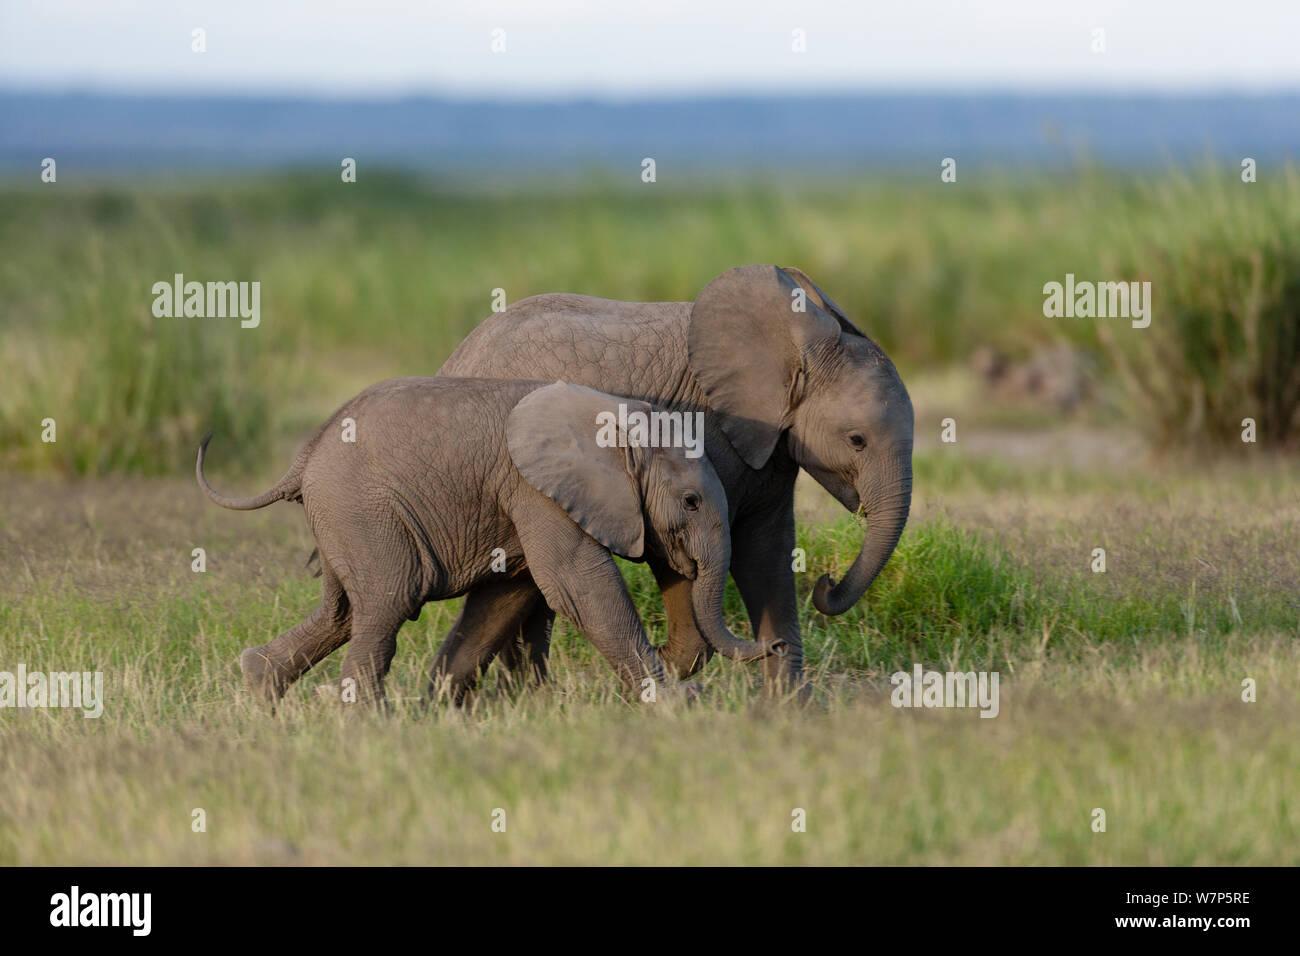 L'éléphant africain (Loxodonta africana) les mineurs de jouer. Le Parc national Amboseli, au Kenya. Banque D'Images